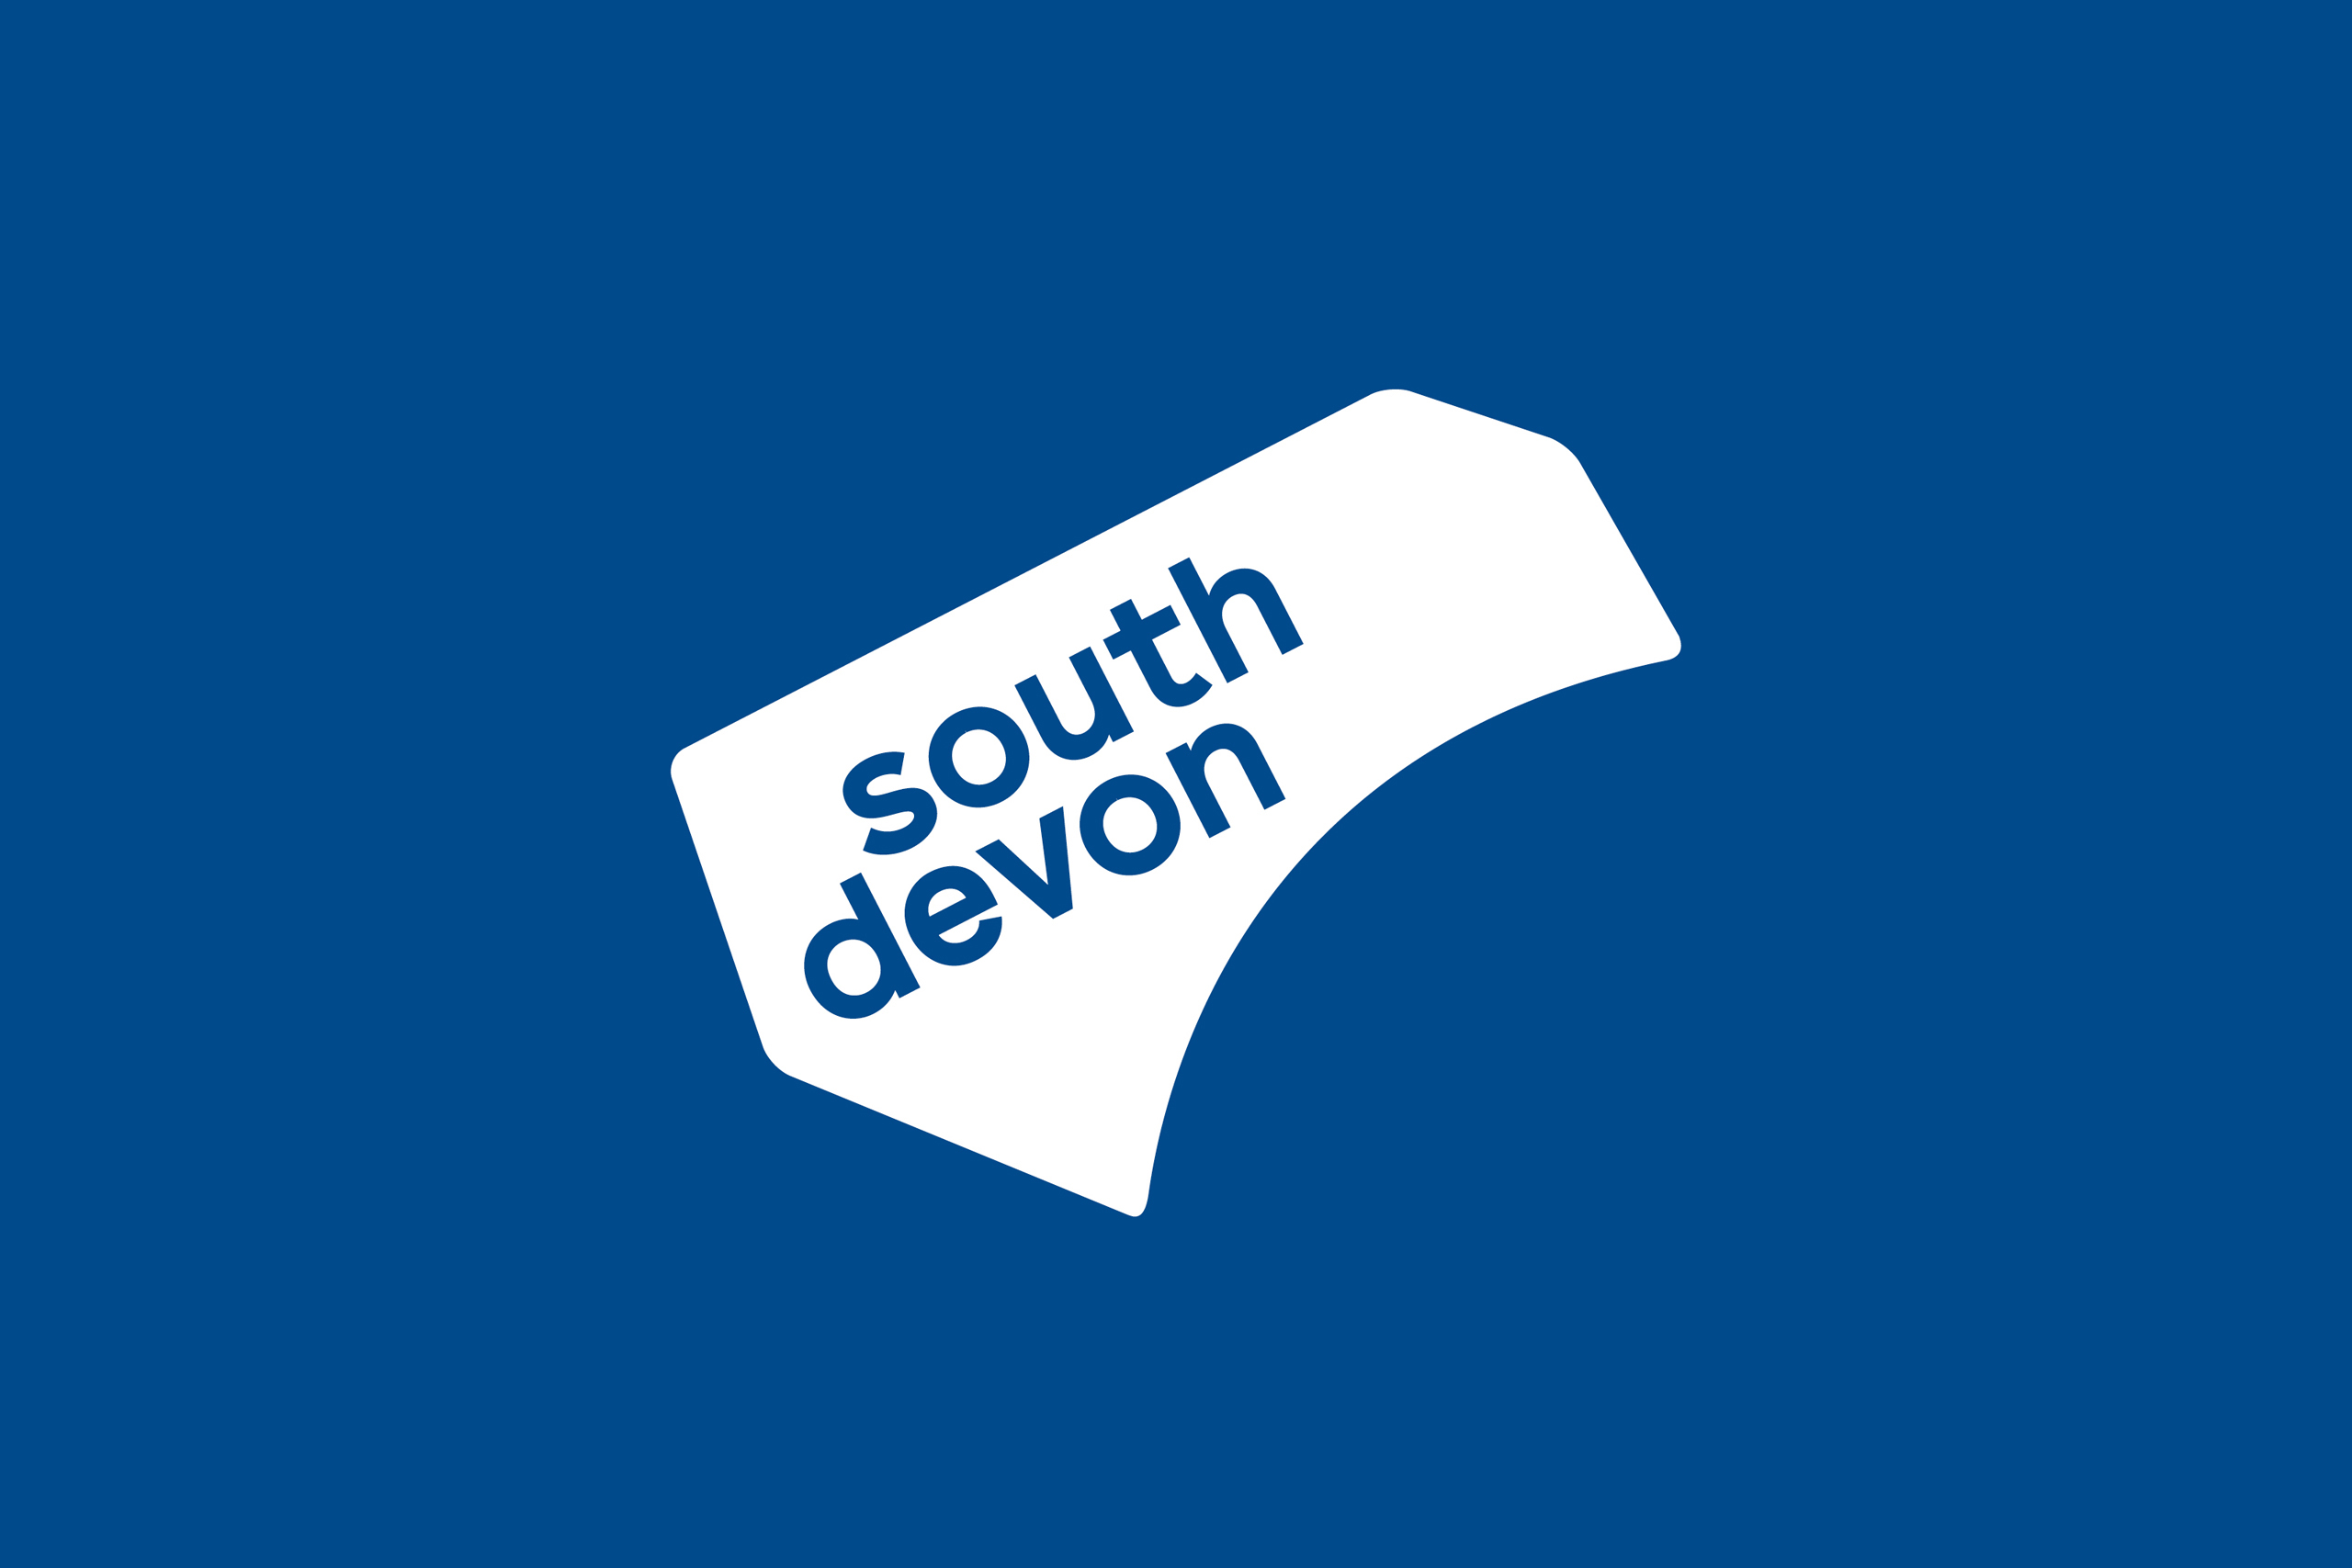 Visit South Devon - Destination brand and marketing